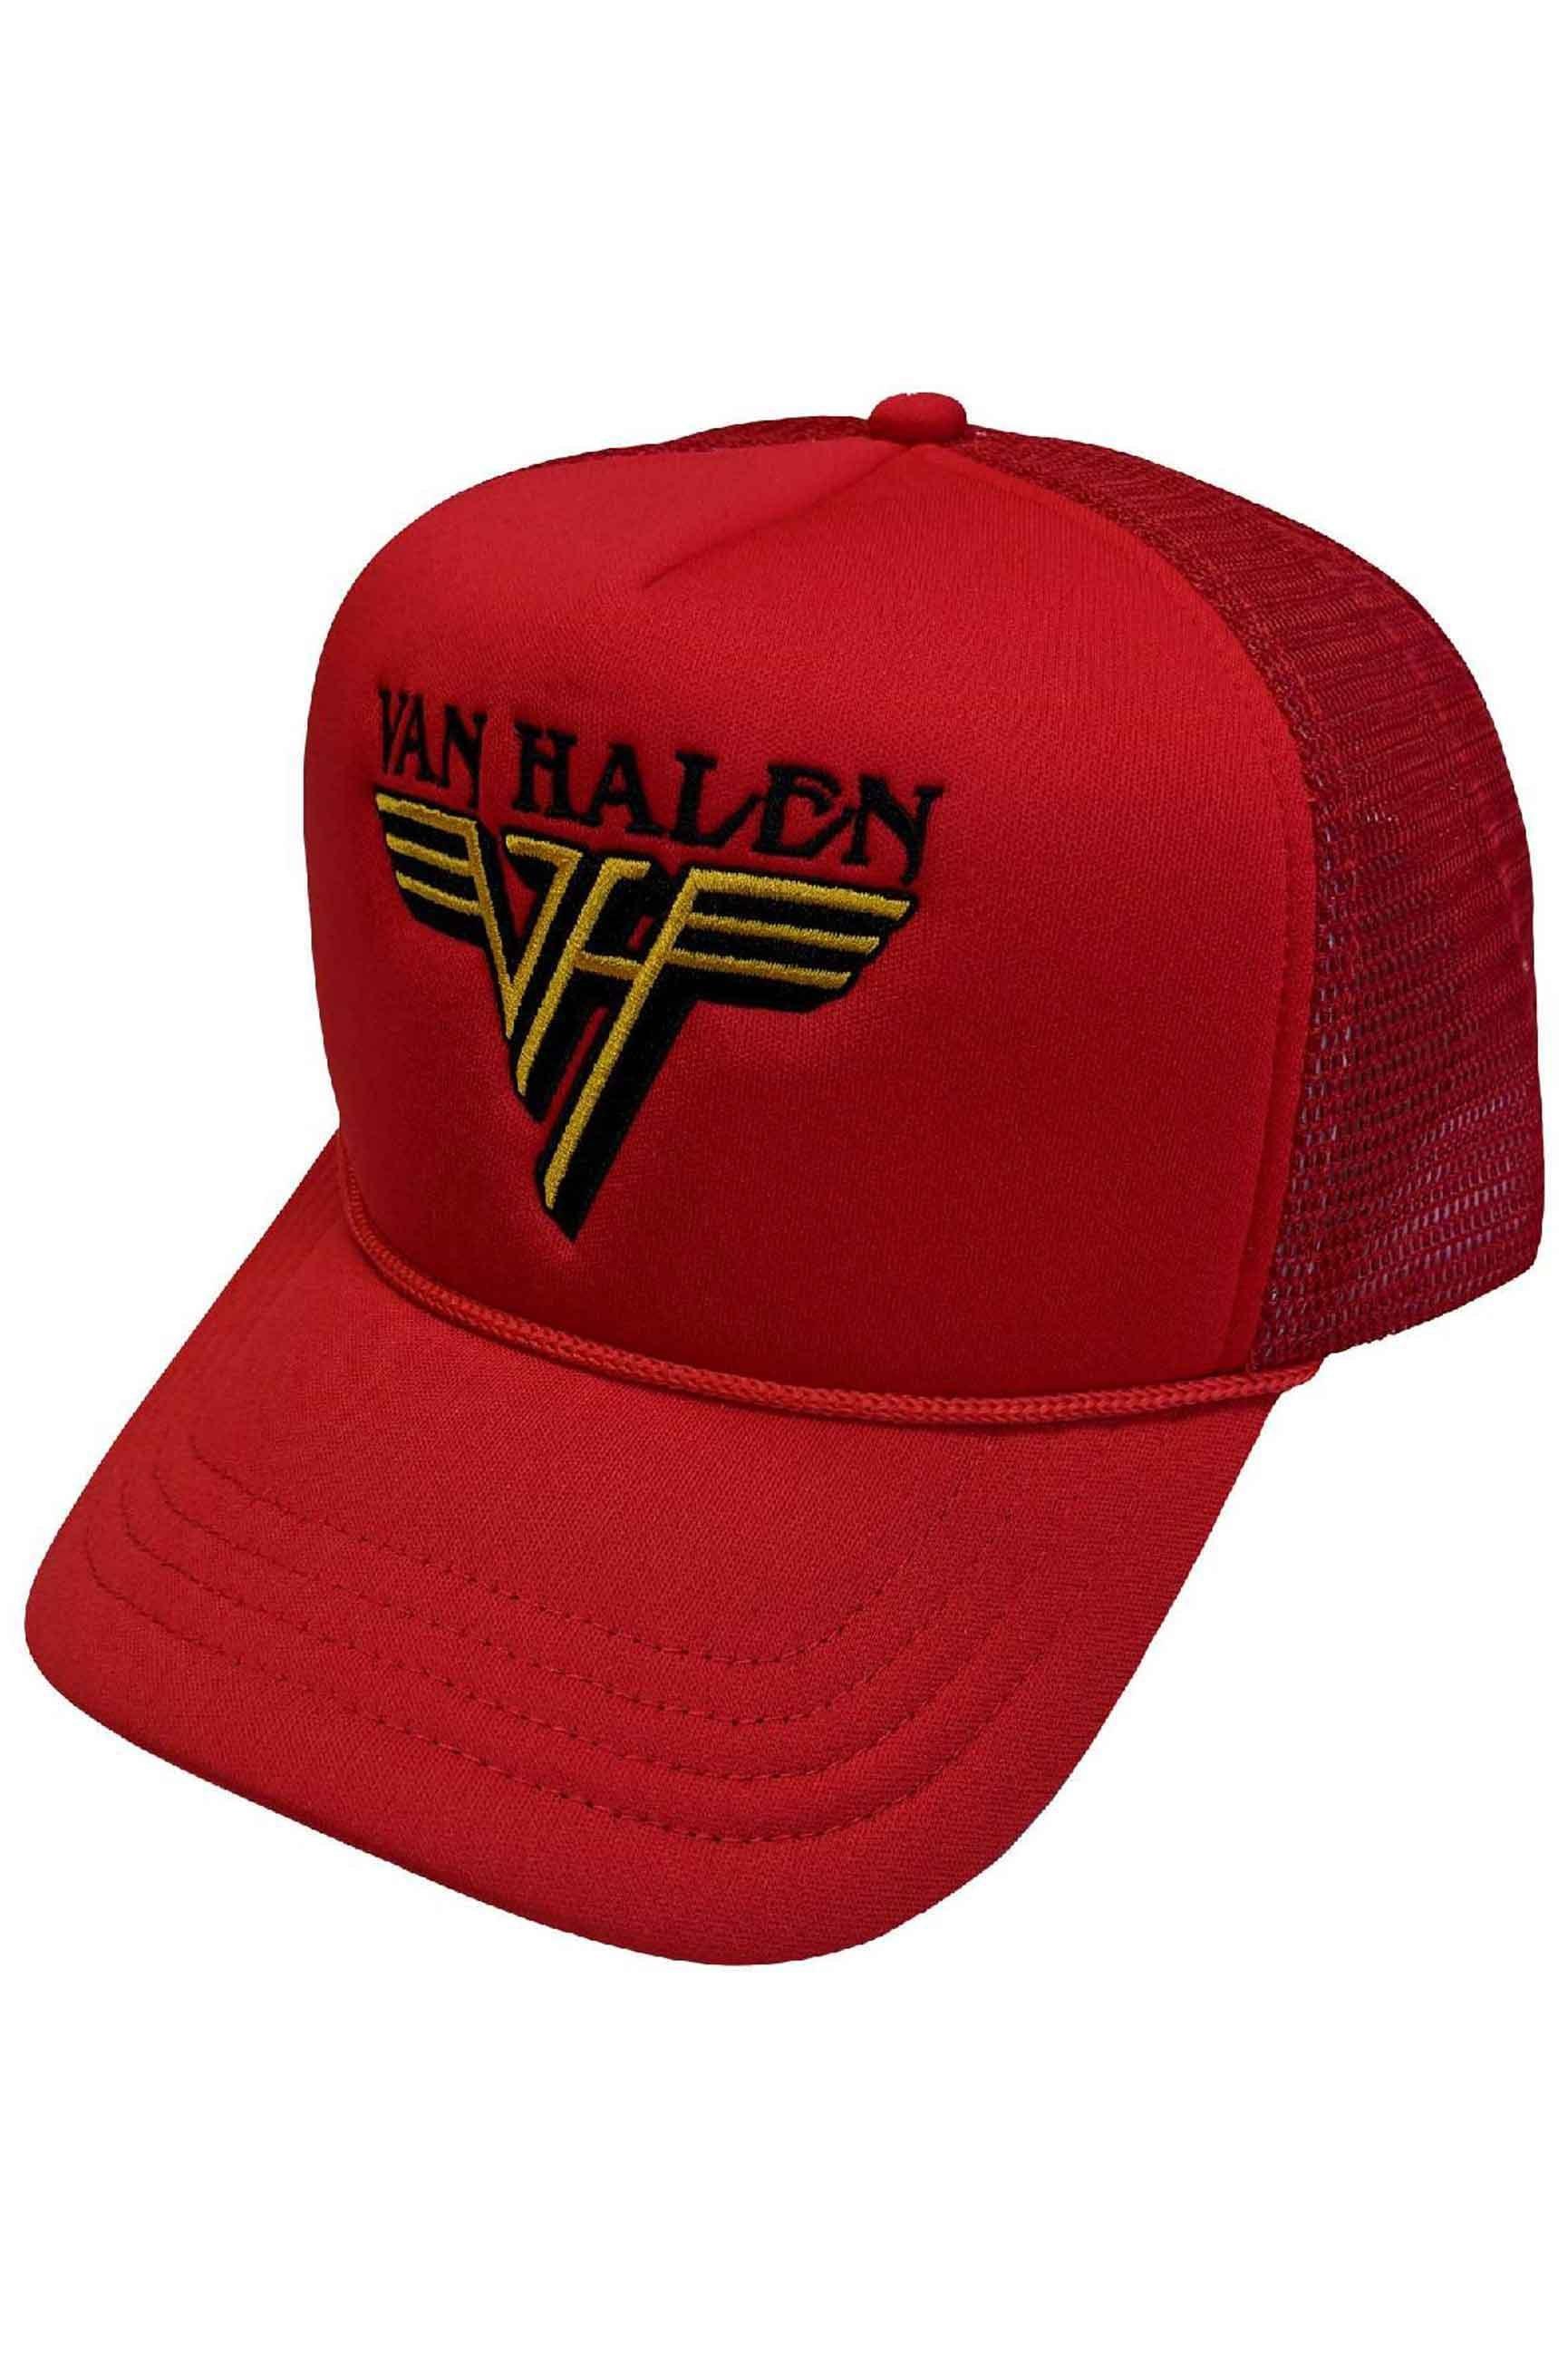 Бейсбольная кепка Trucker с текстовым ремешком и логотипом Van Halen, красный детская индивидуальная кепка с логотипом сделай сам для мужчин и женщин кепка для грузовика сетчатая кепка